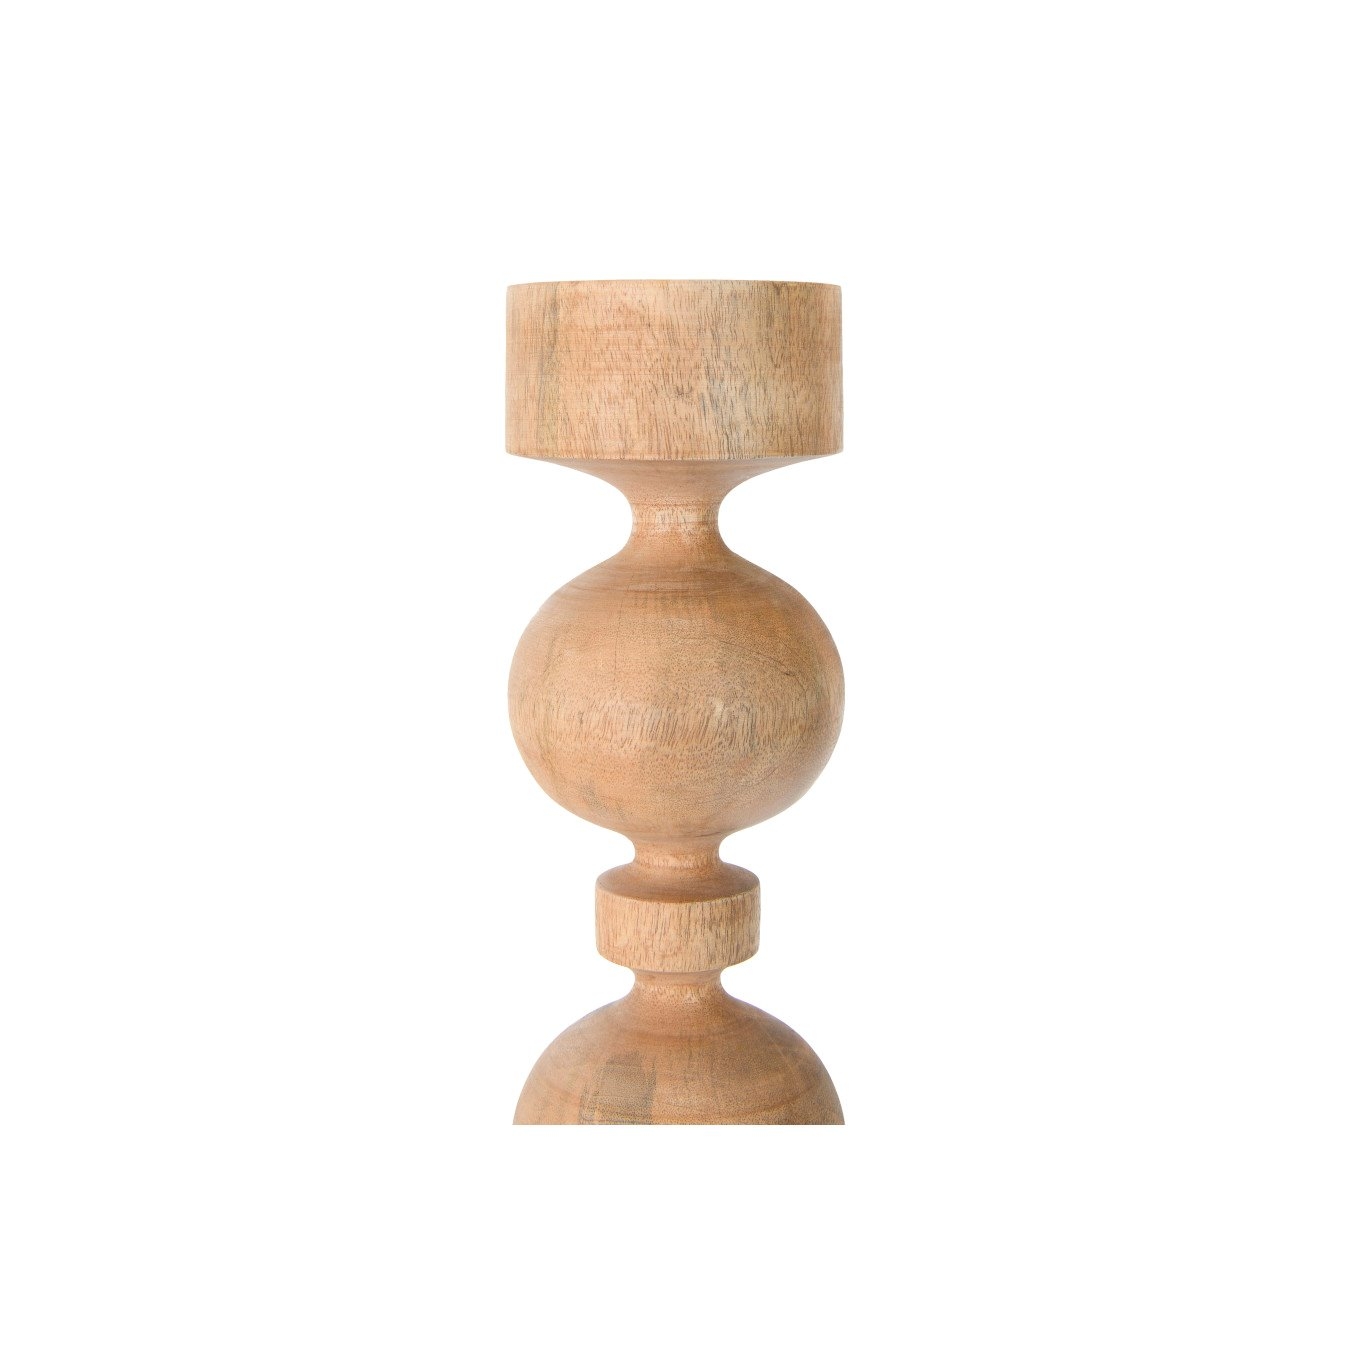 Carved Mango Wood Candle Holder, 18" - Image 2